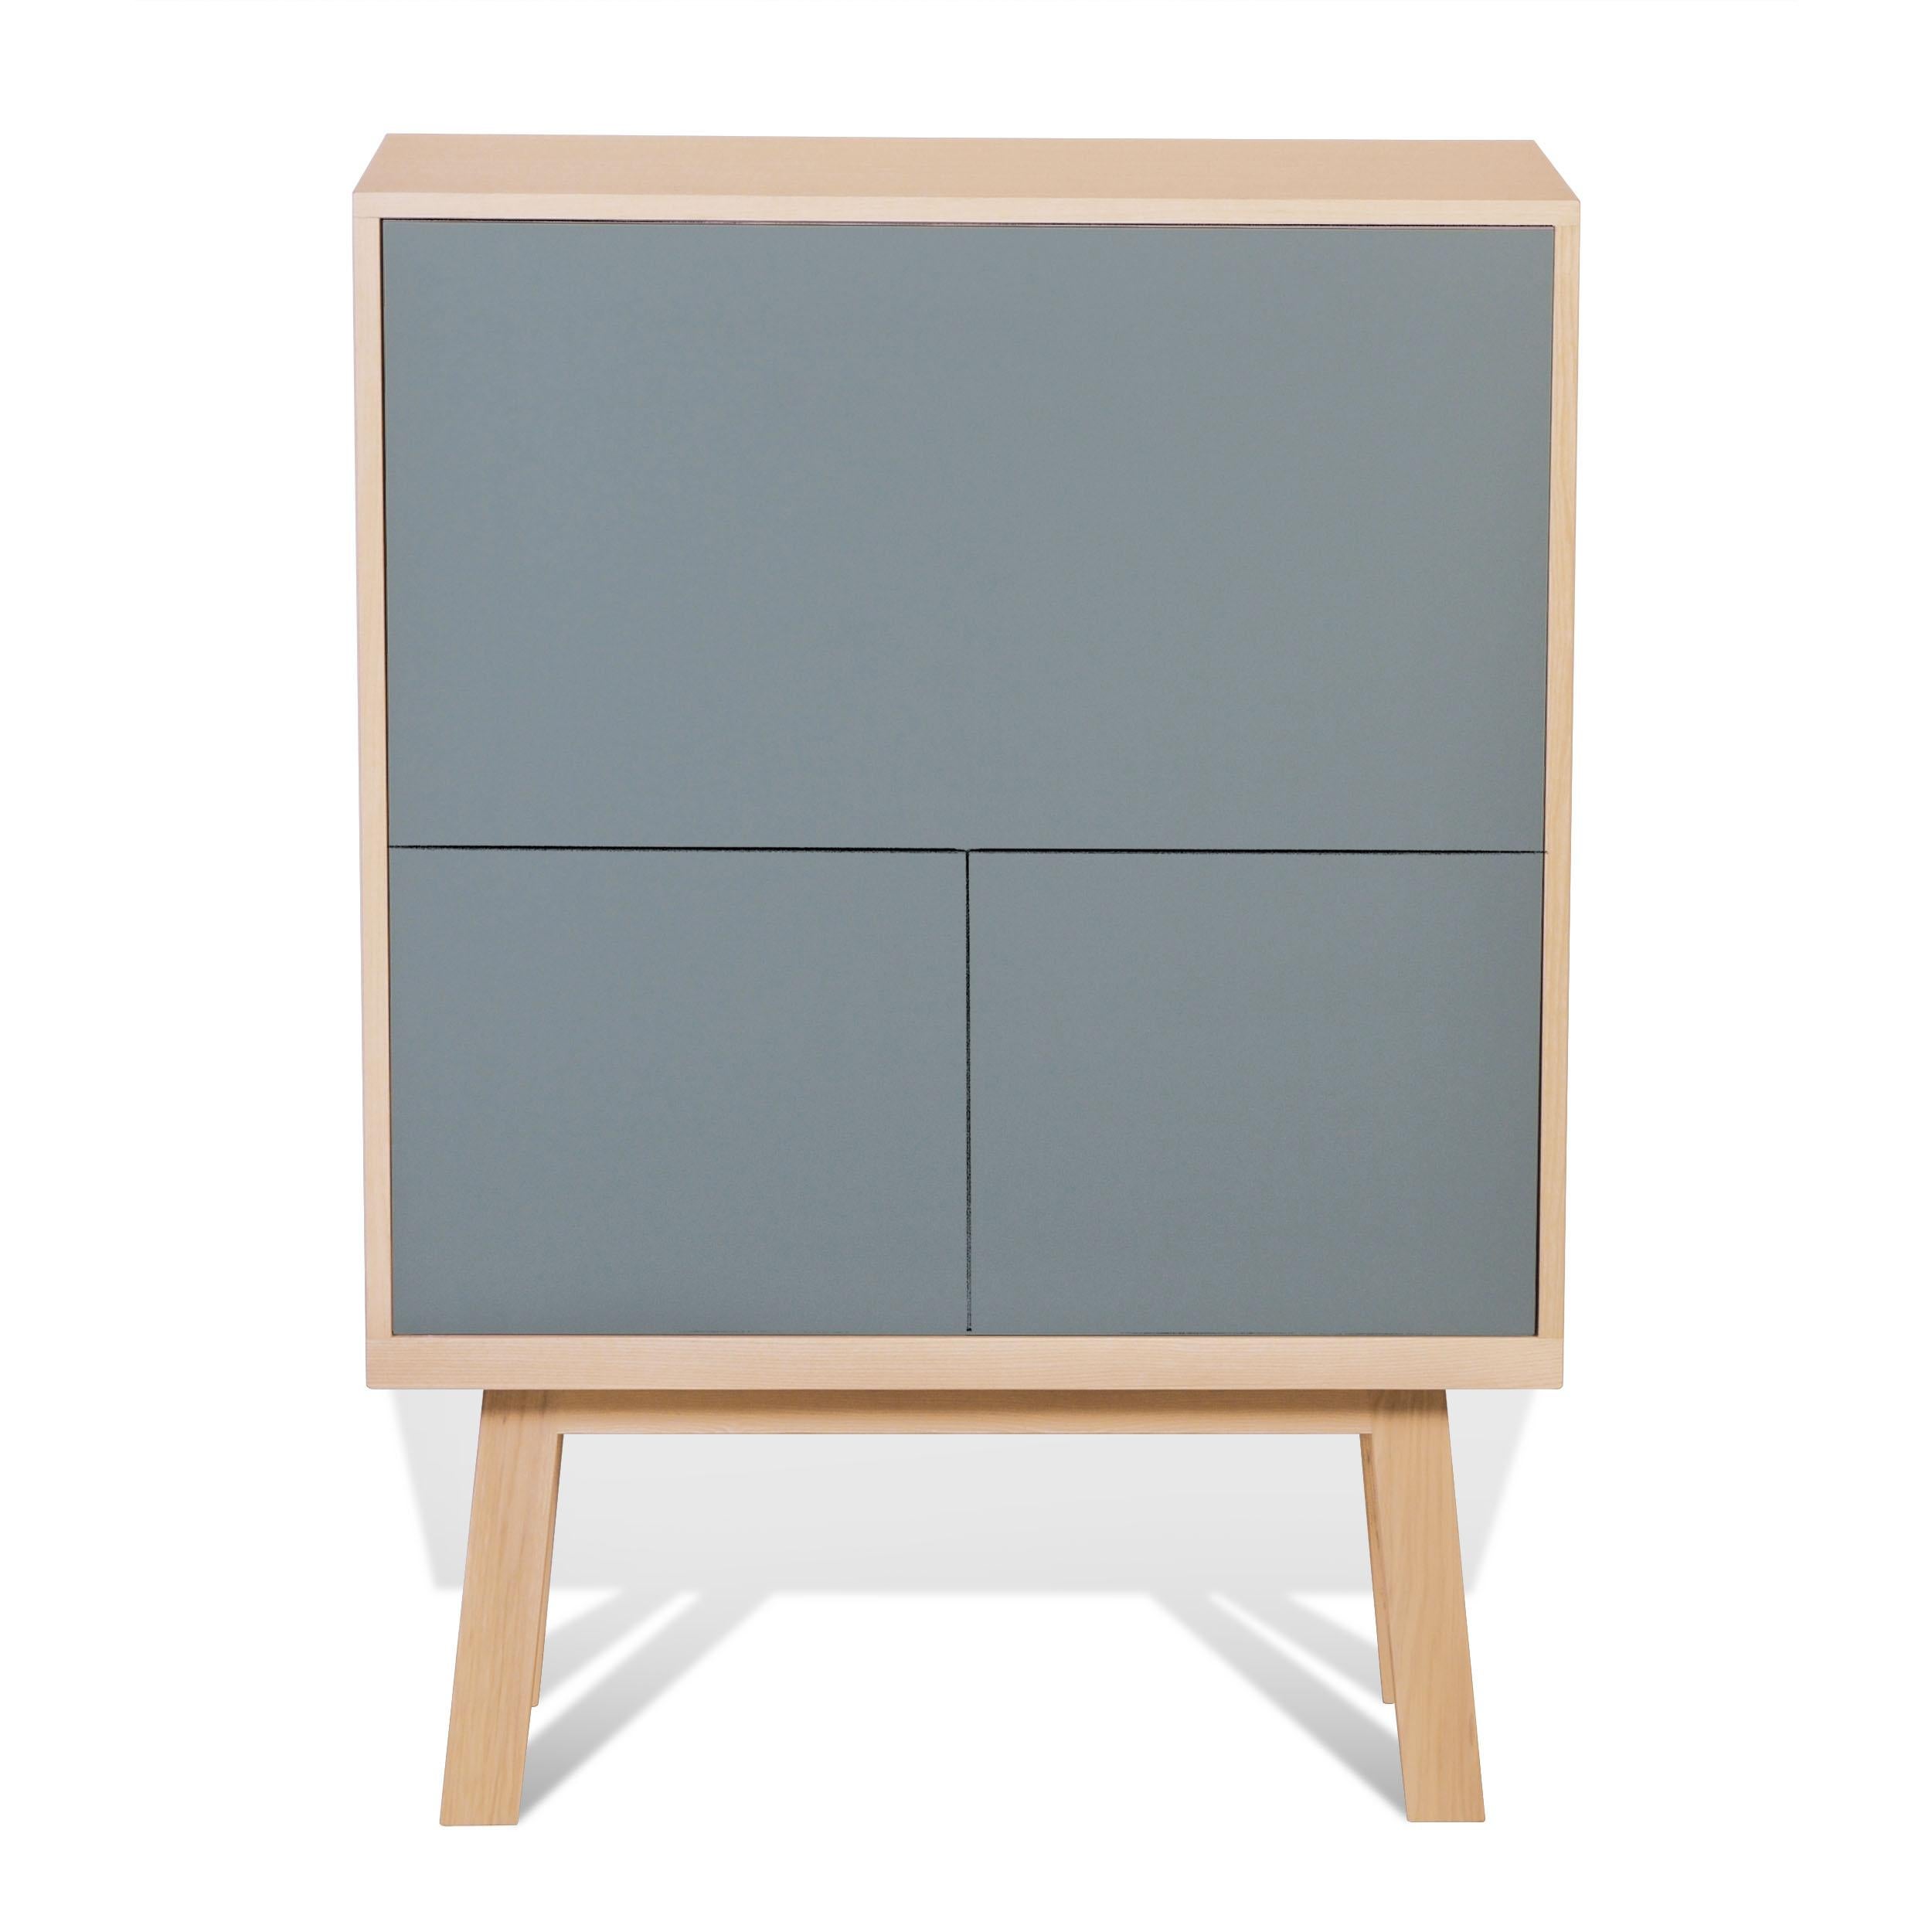 French grey blue secrétaire desk with storage room, 11 colours, design E. Gizard Paris For Sale